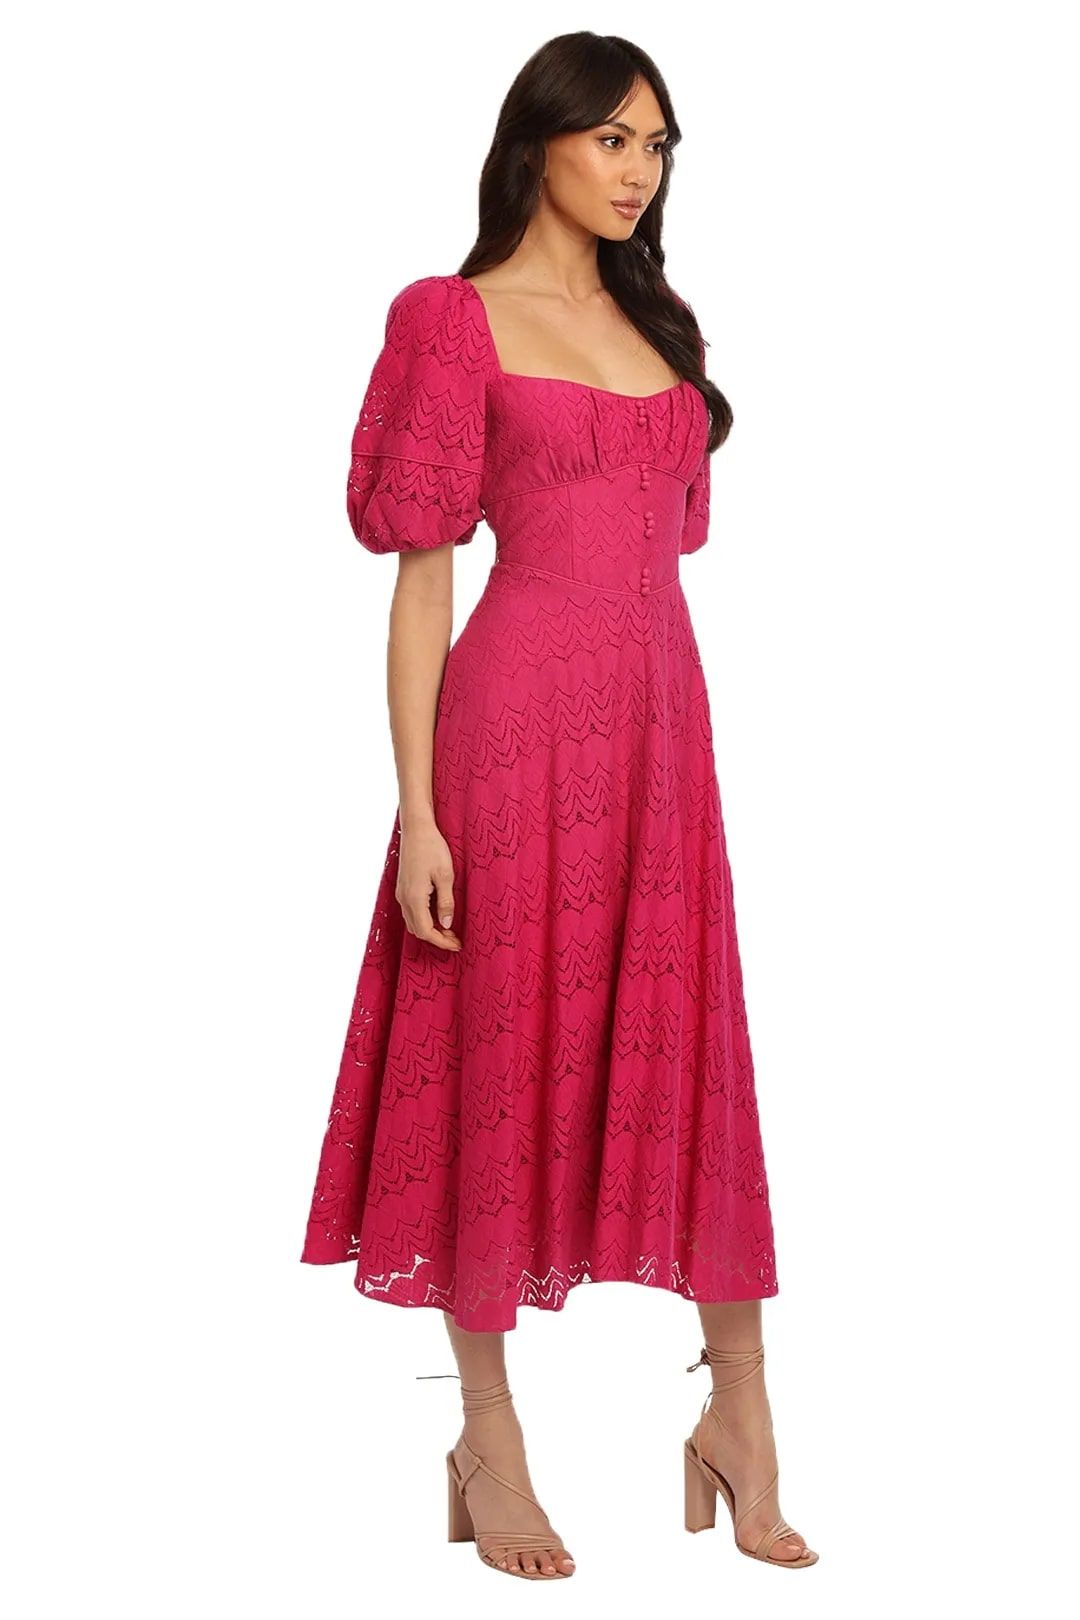 Elegant Acler Stapleton Dress for daytime events, available for rent